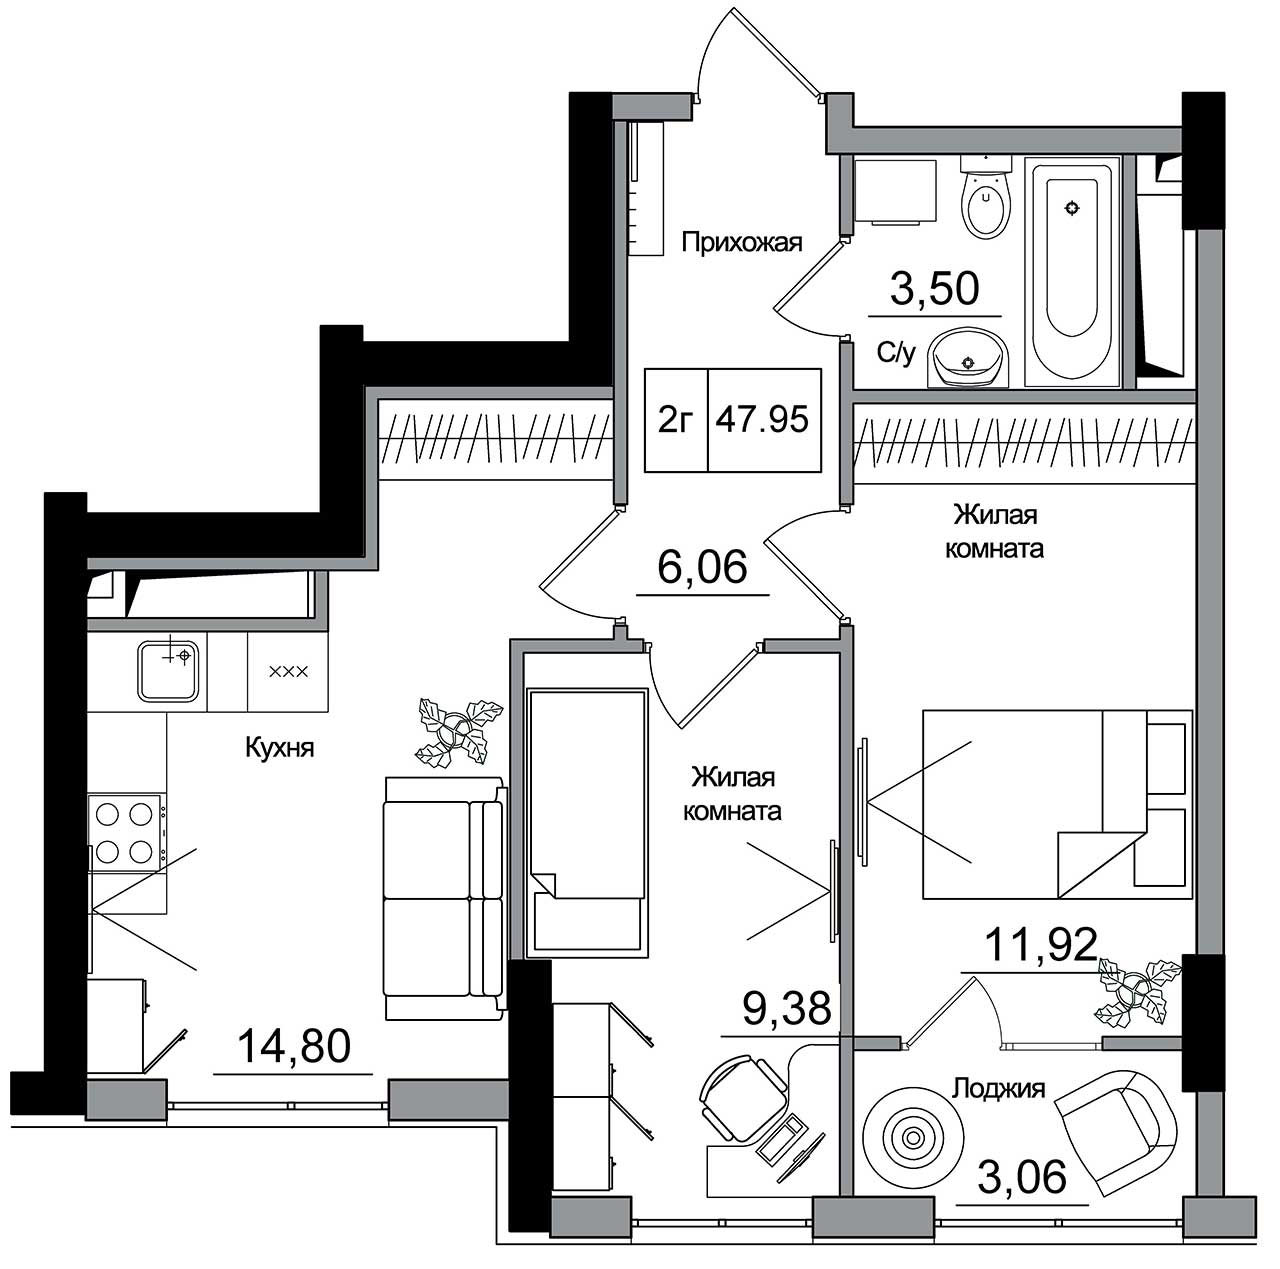 Планування 2-к квартира площею 47.95м2, AB-16-11/00014.